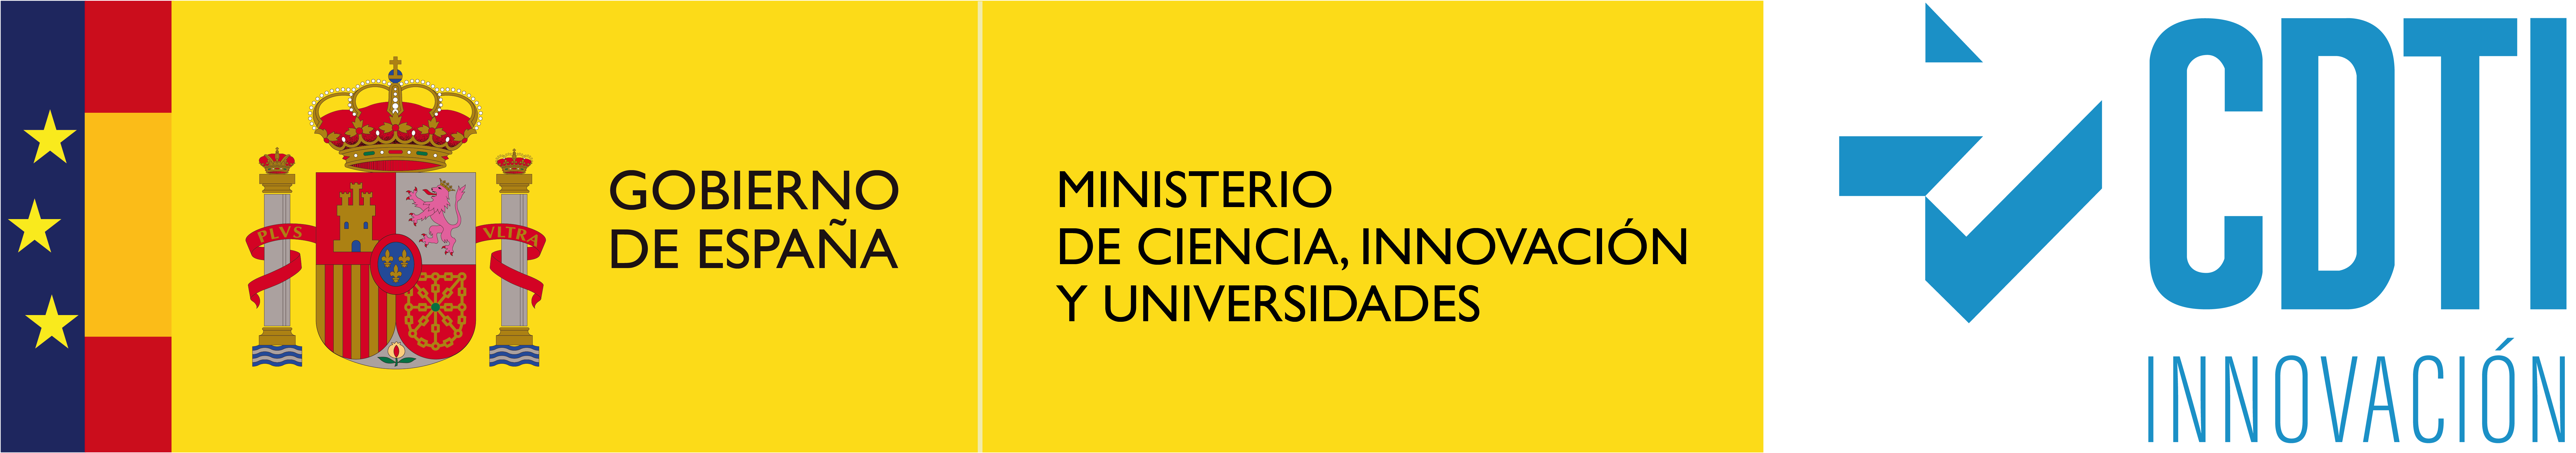 Imágenes del CDTI y del gobierno de España, ministerio de ciencia e innovación